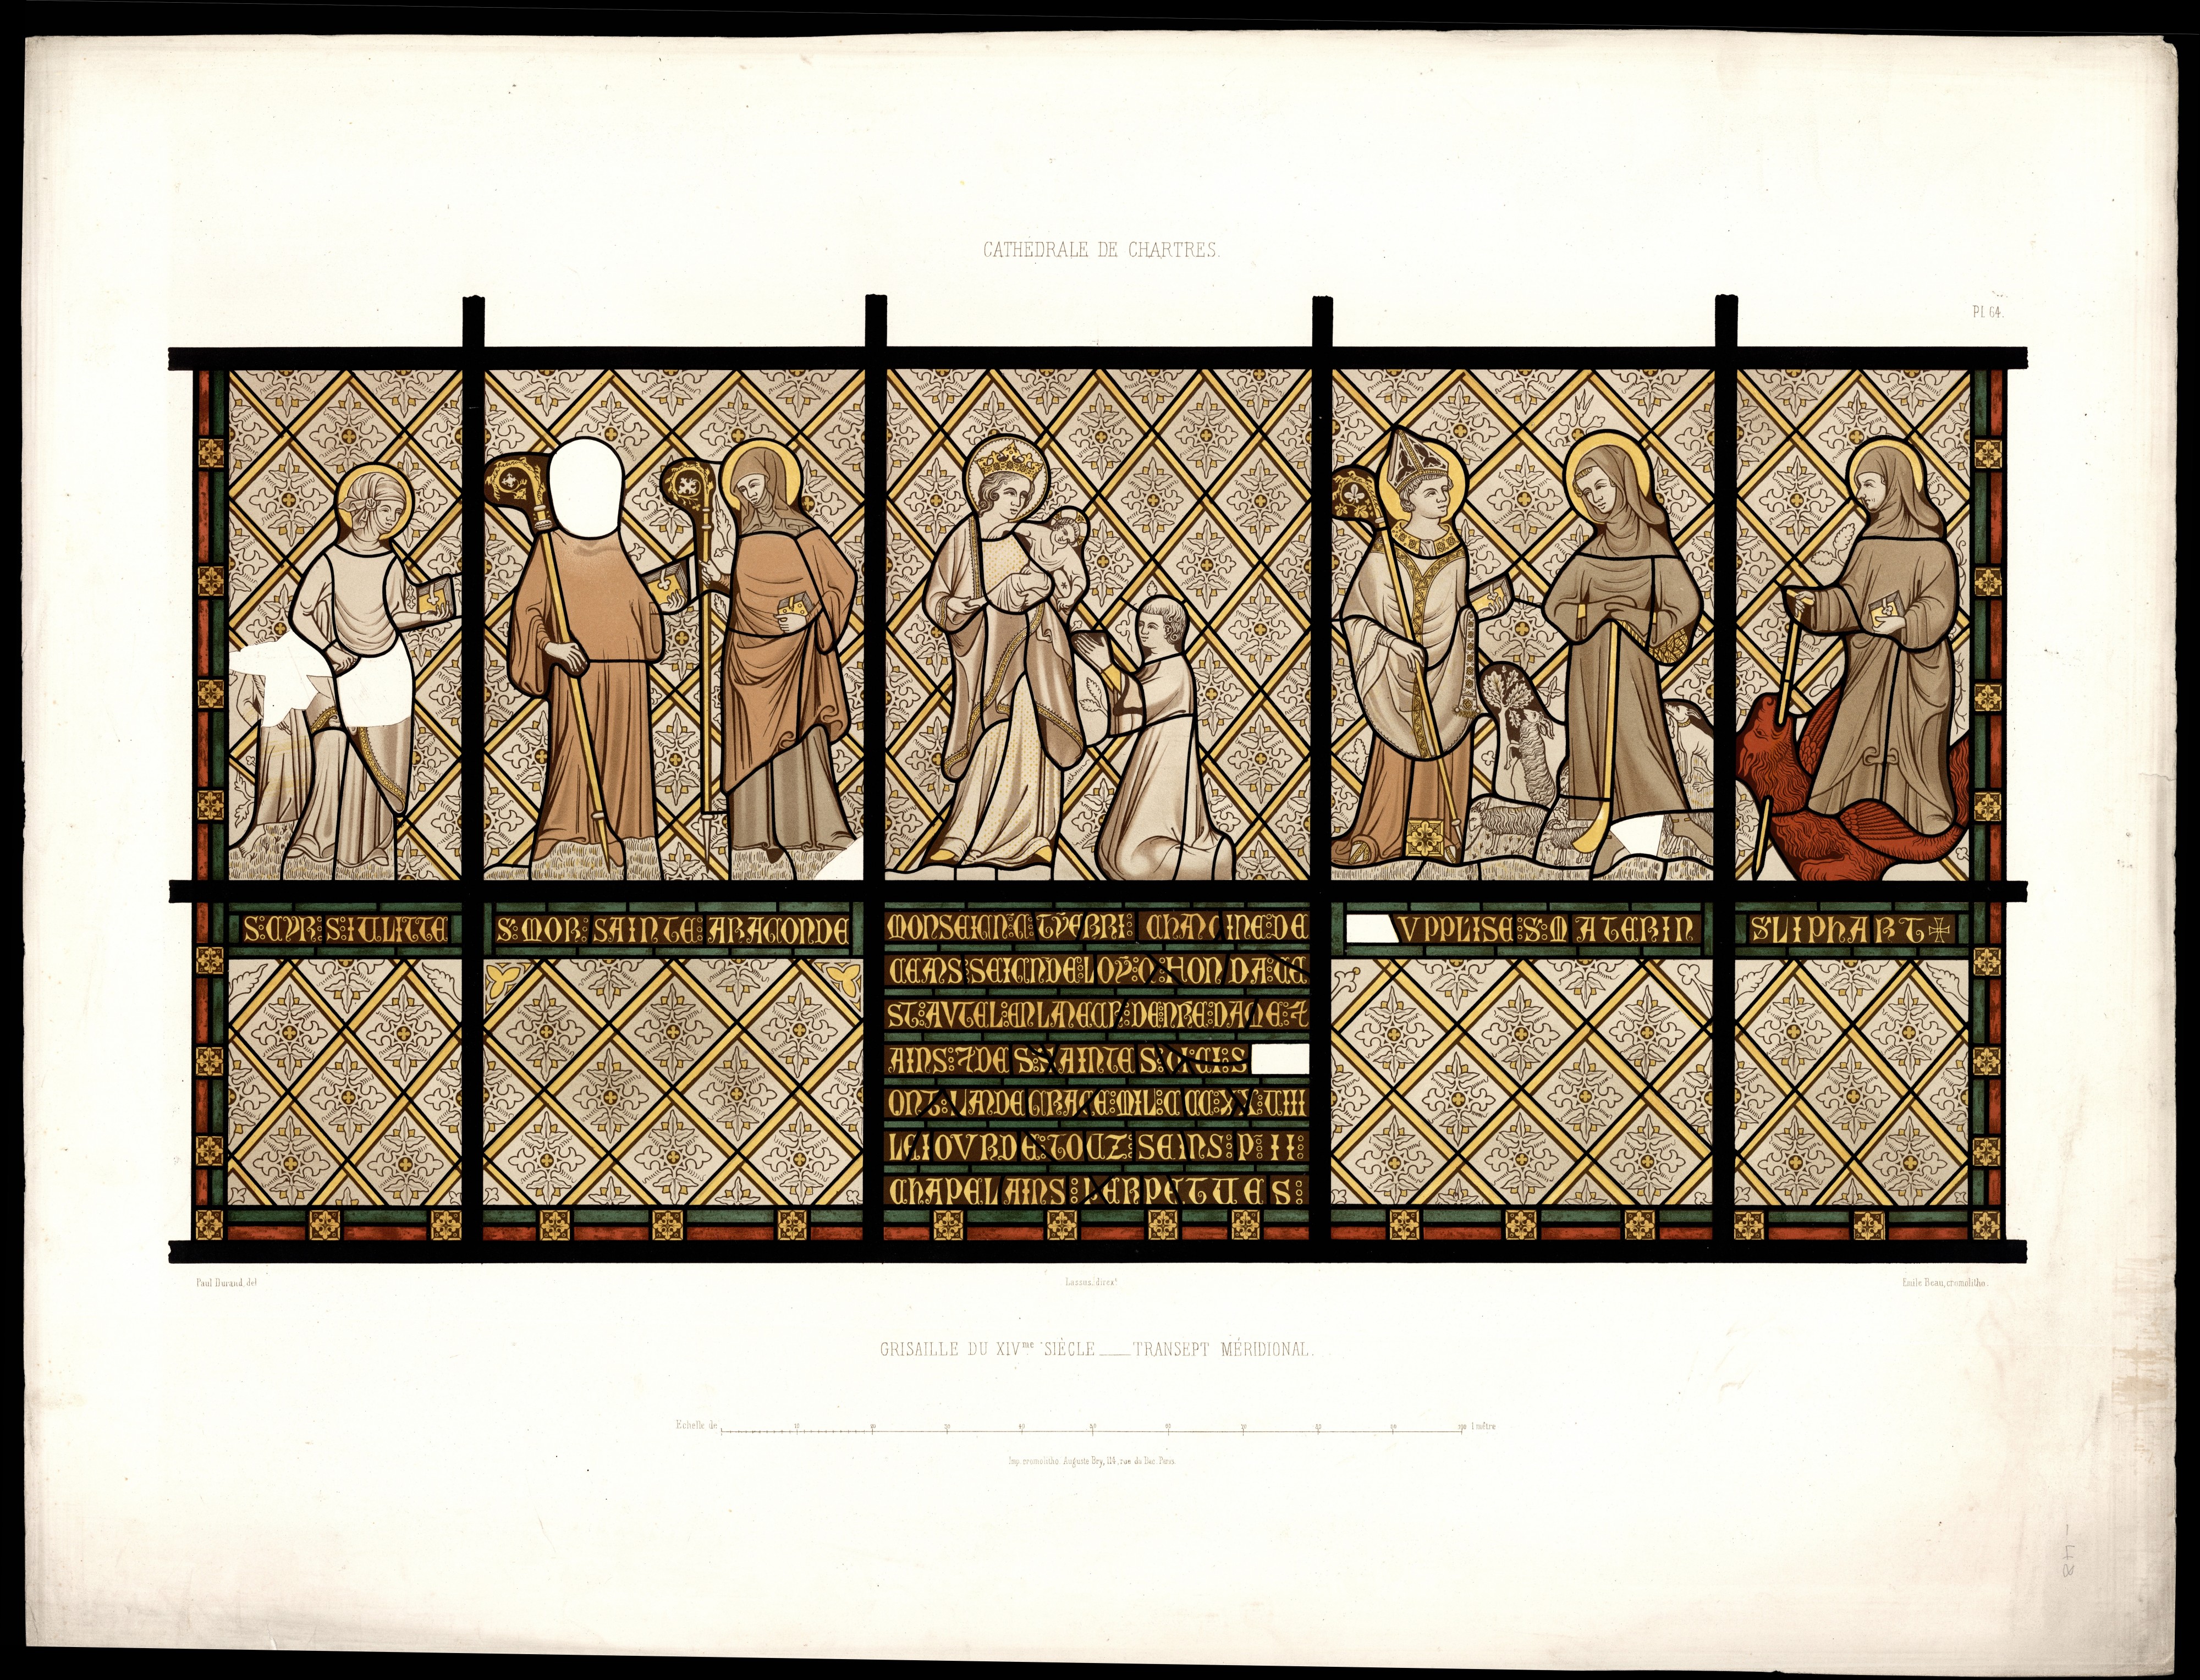 Monografie de la Cathedrale de Chartres - Atlas - Vitrail du transept meridional - Grisaille - Chromo-lithographie